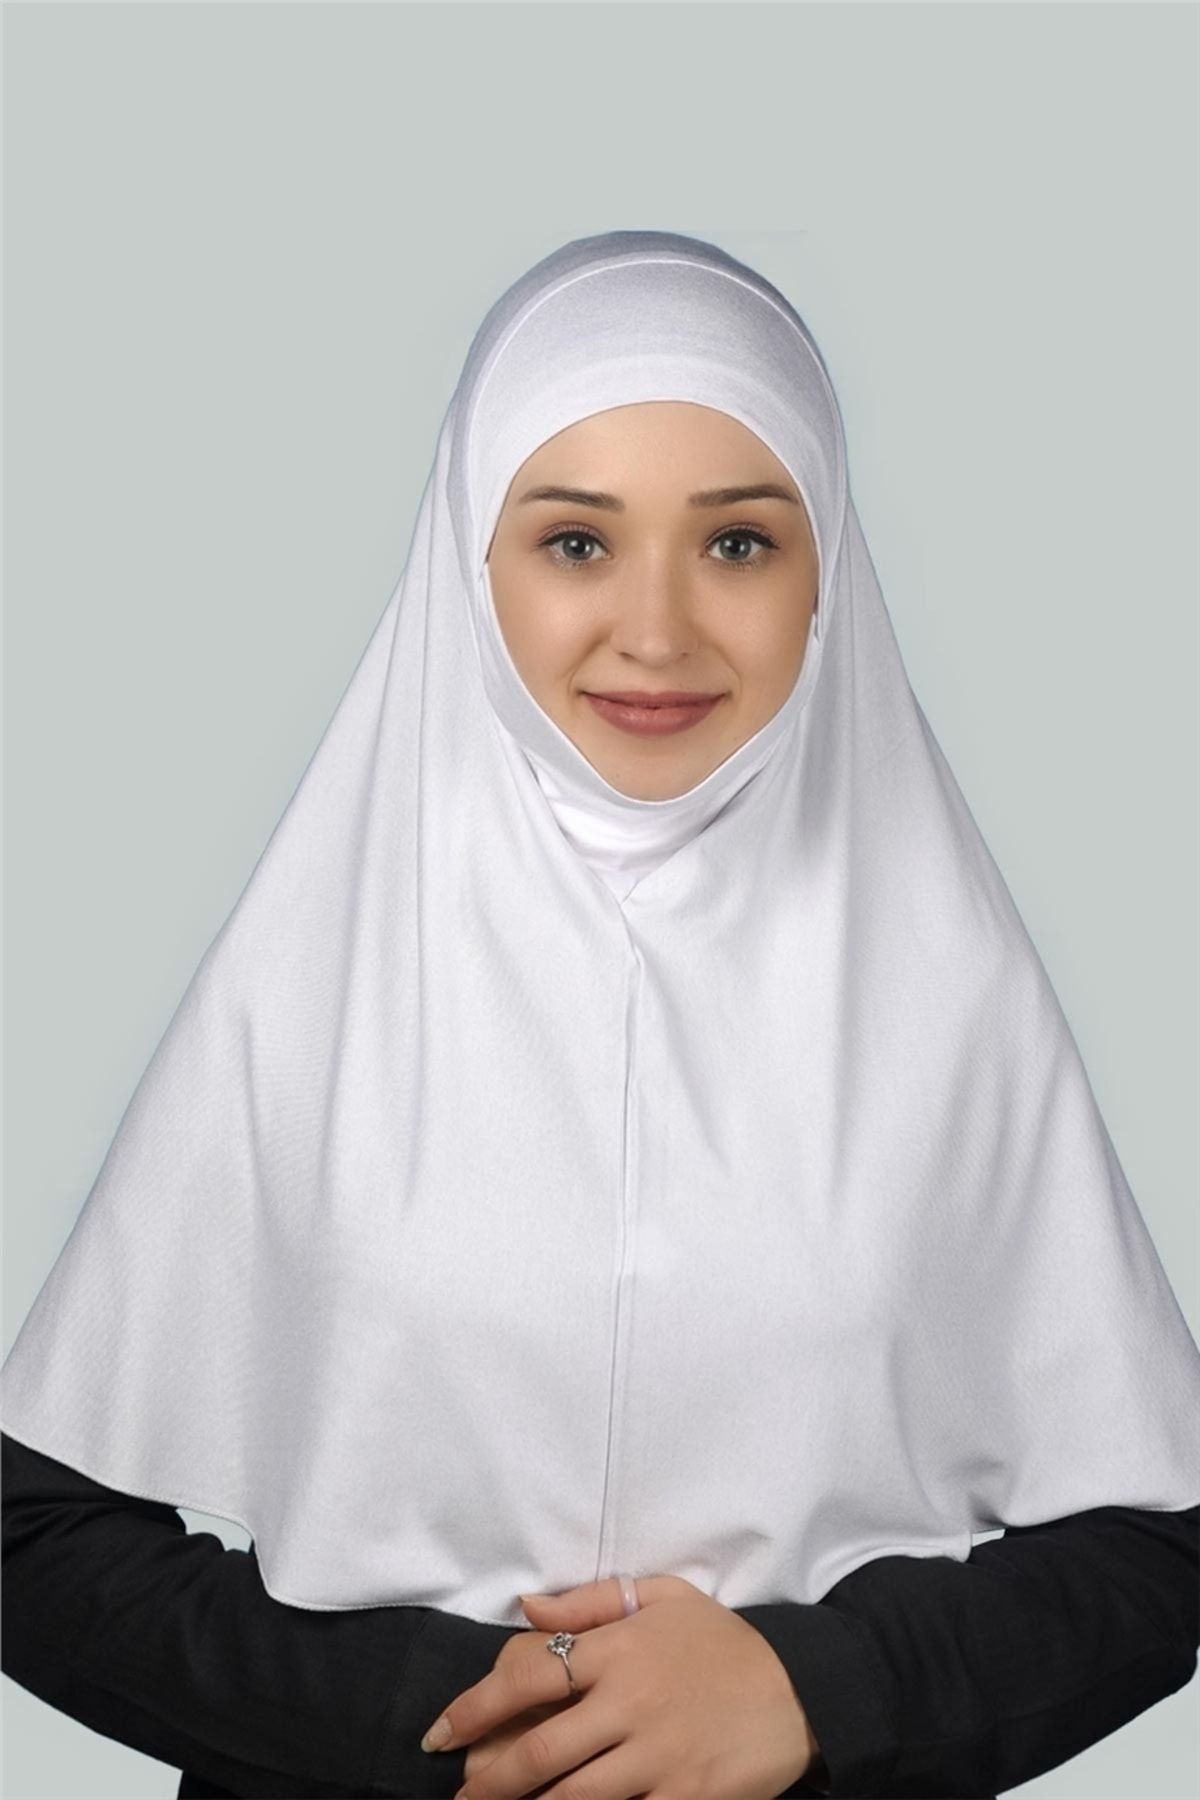 Altobeh Hazır Türban Peçeli Pratik Eşarp Tesettür Nikaplı Hijab - Namaz Örtüsü Sufle (XL) - Beyaz